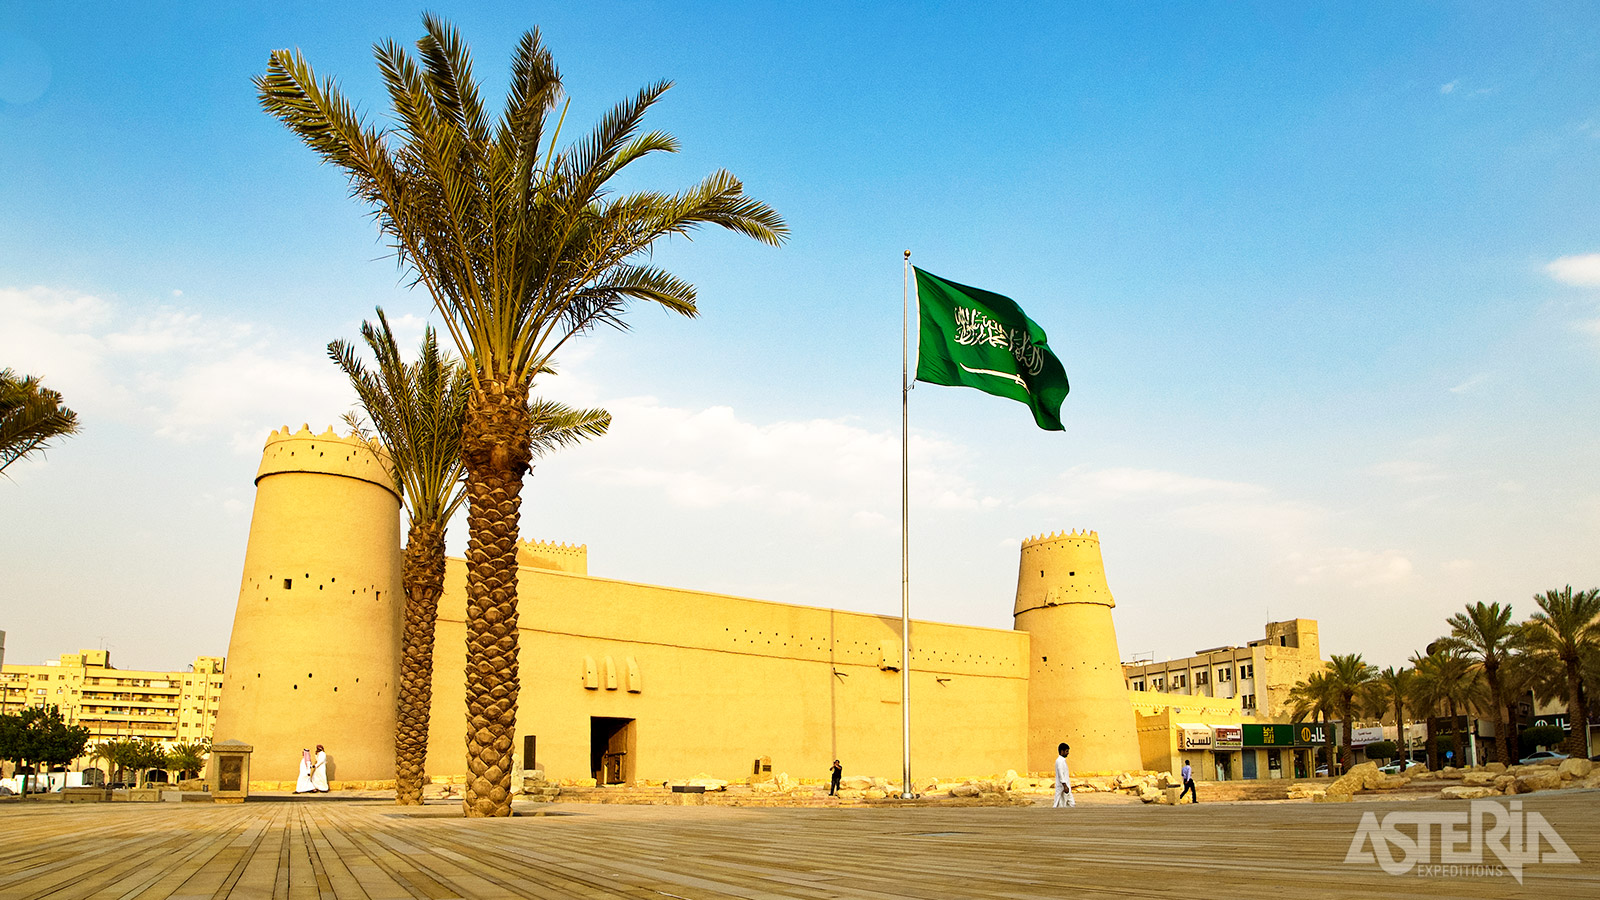 Het Masmak Fort in Riyad is een stille getuige van grote gebeurtenissen in de geschiedenis van het land